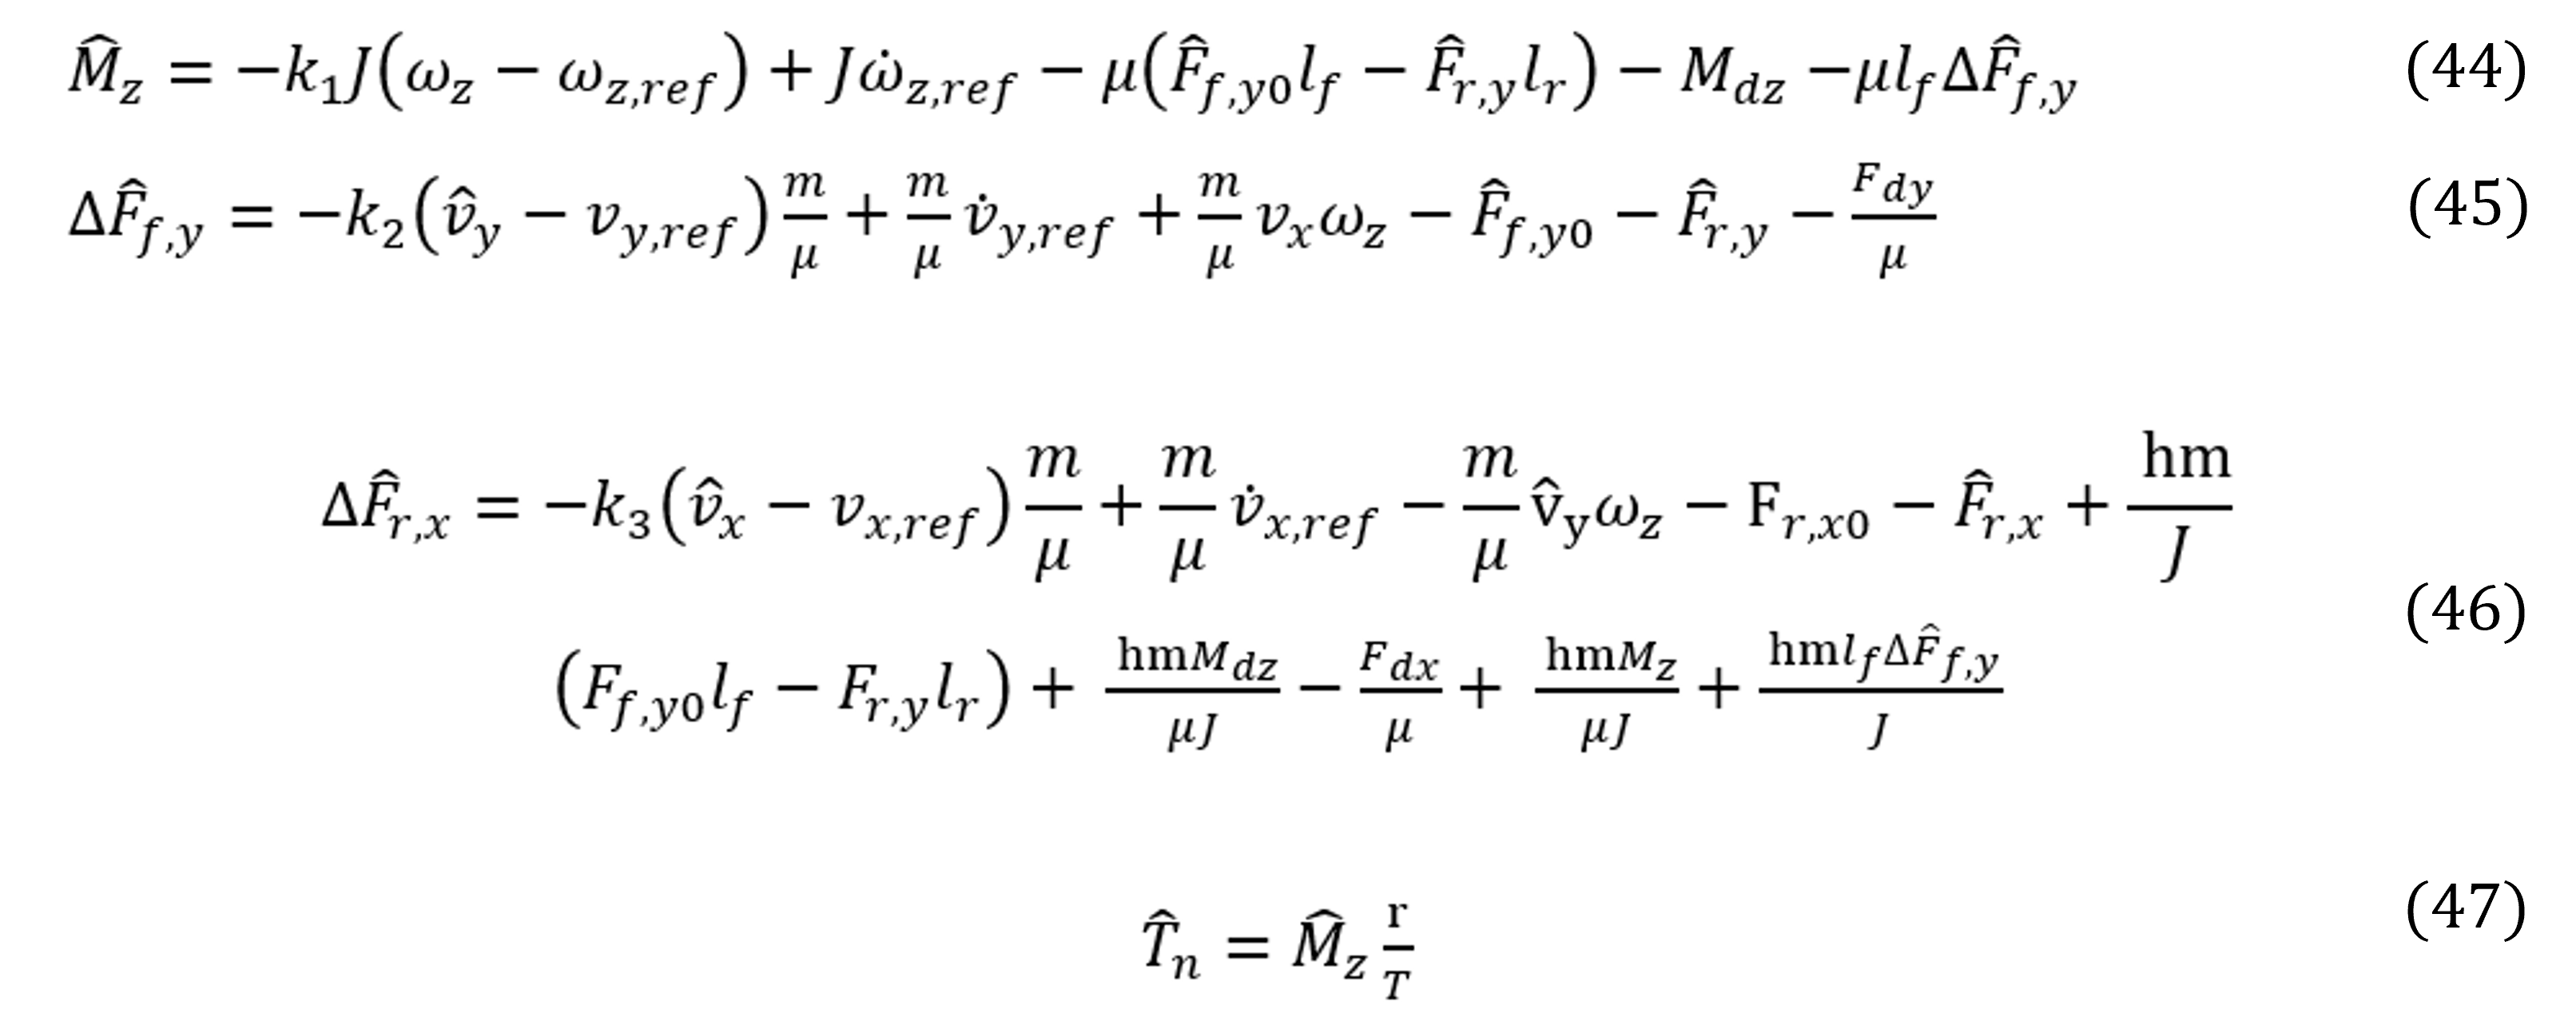 una ecuacion sobre el modelo matemático